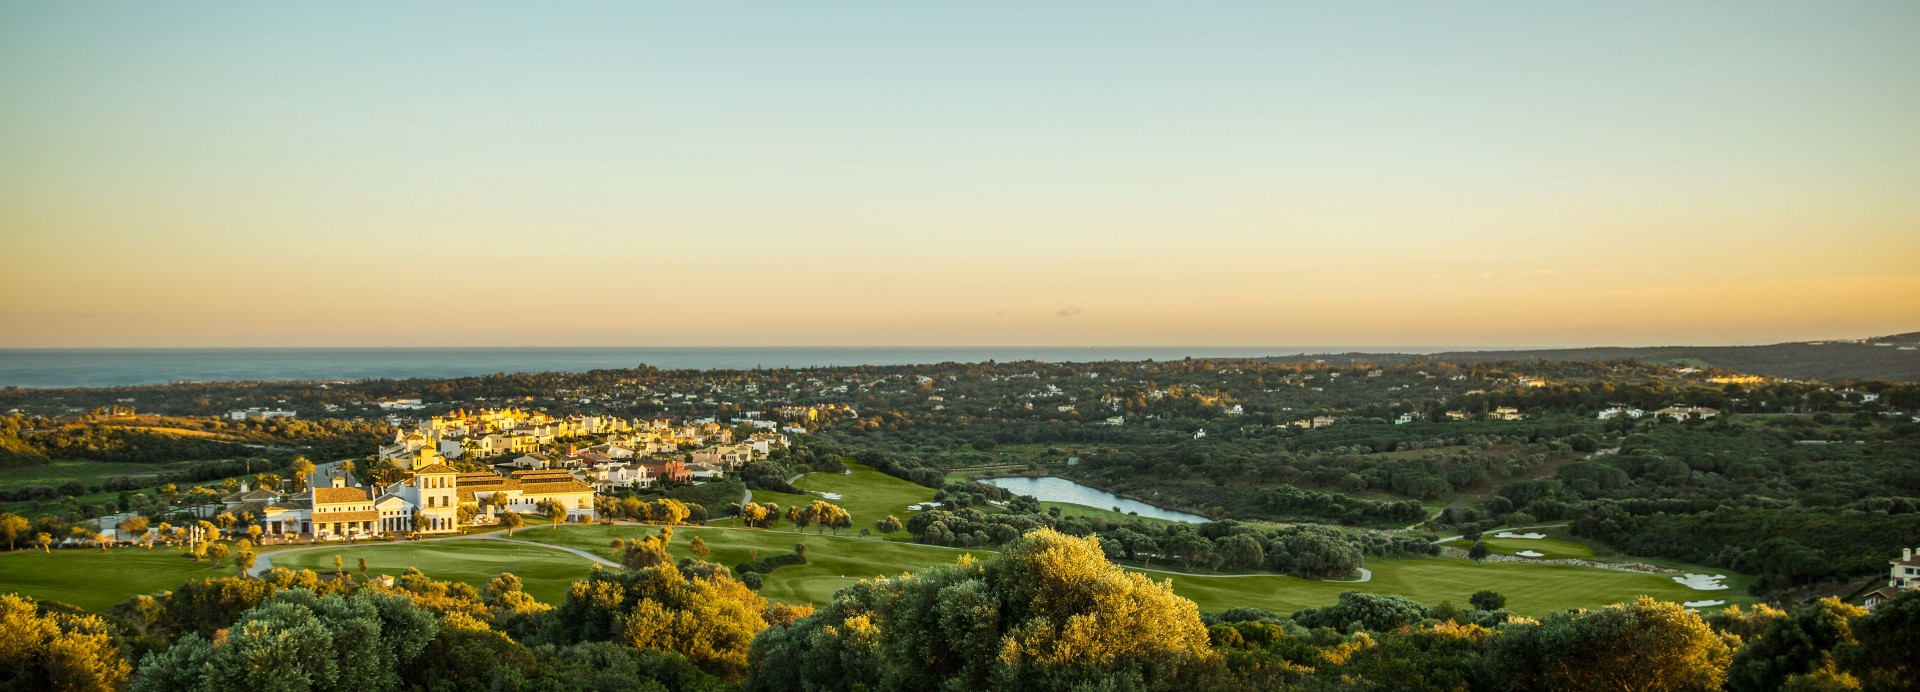 La Reserva Club Sotogrande  | Golfové zájezdy, golfová dovolená, luxusní golf